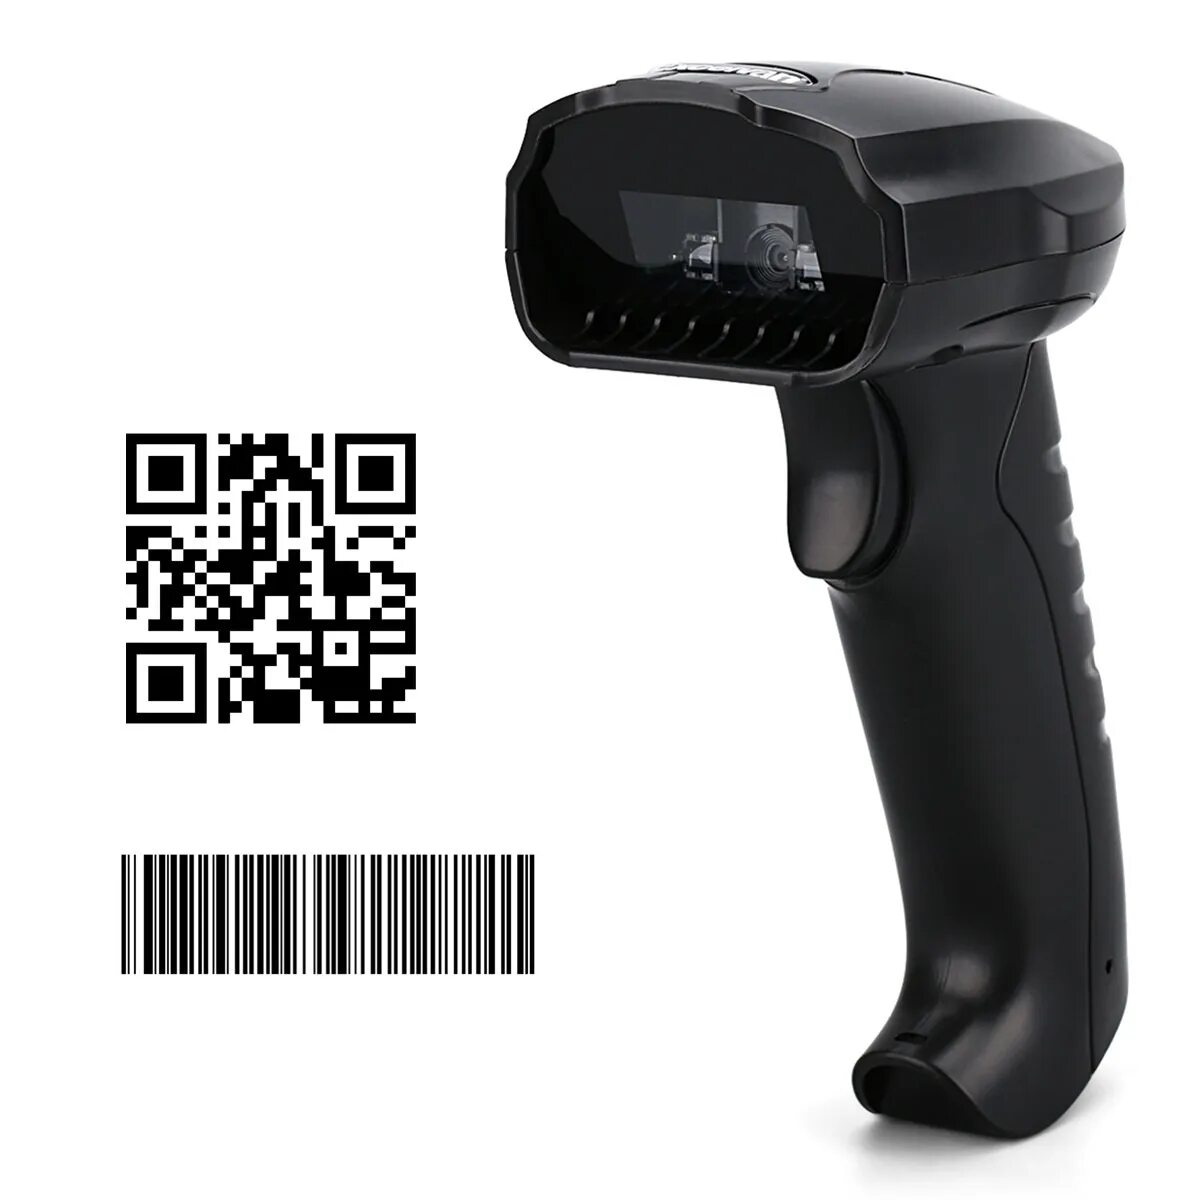 Сканировать штрих. Сканер штрих-кодов Hakko c5009. 2d сканер штрих-кода для считывания кода. Сканер штрих кодов a680. Сканер штрихкодов YHD-m300d.